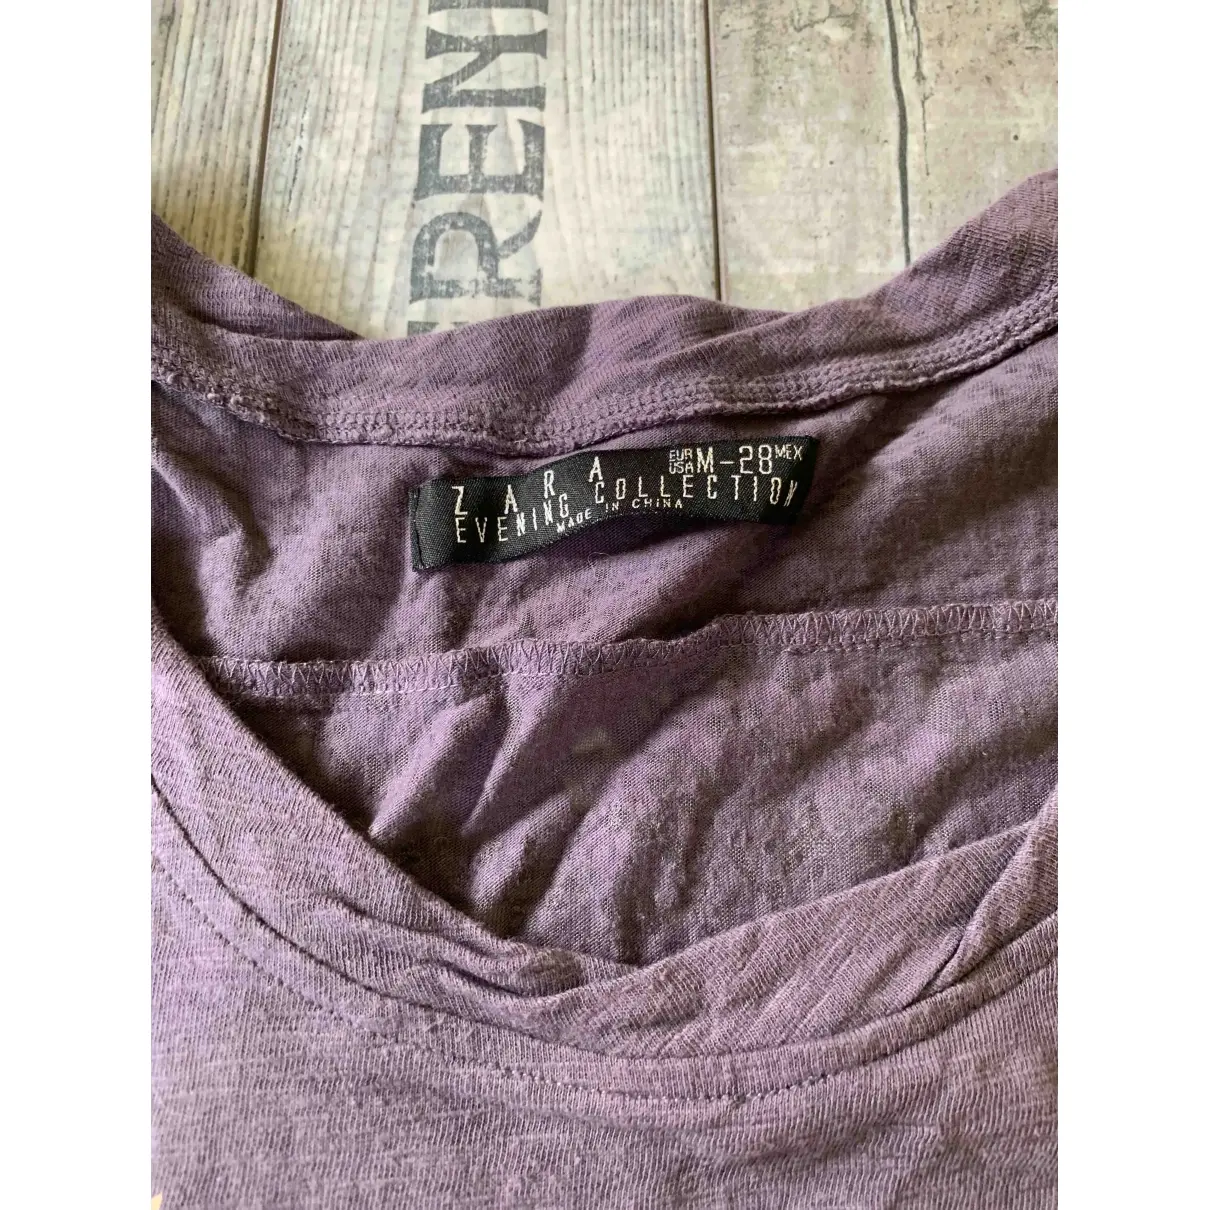 Buy Zara Purple Cotton Top online